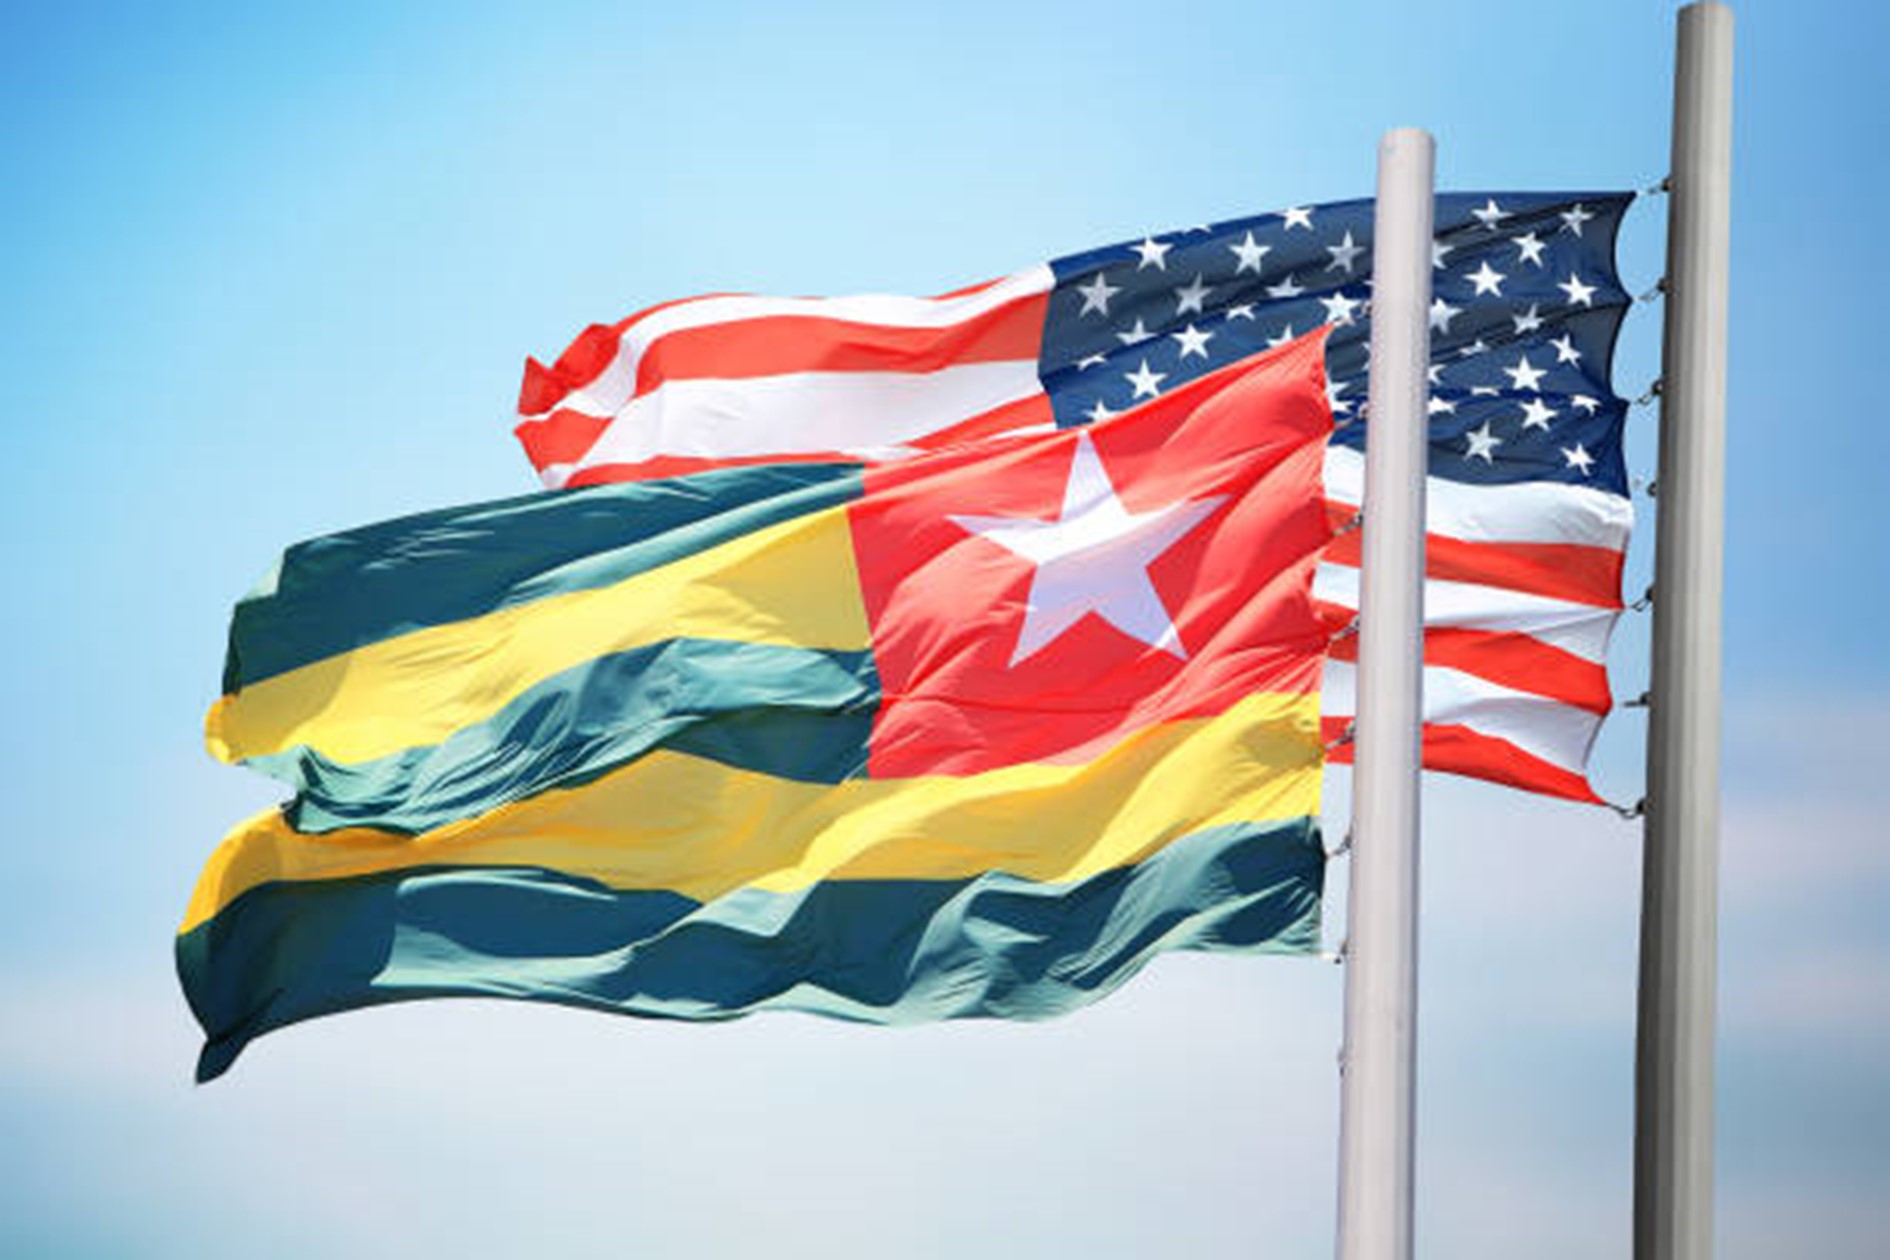 Le Togo parmi les pays africains bénéficiaires d’une aide humanitaire des Etats-Unis